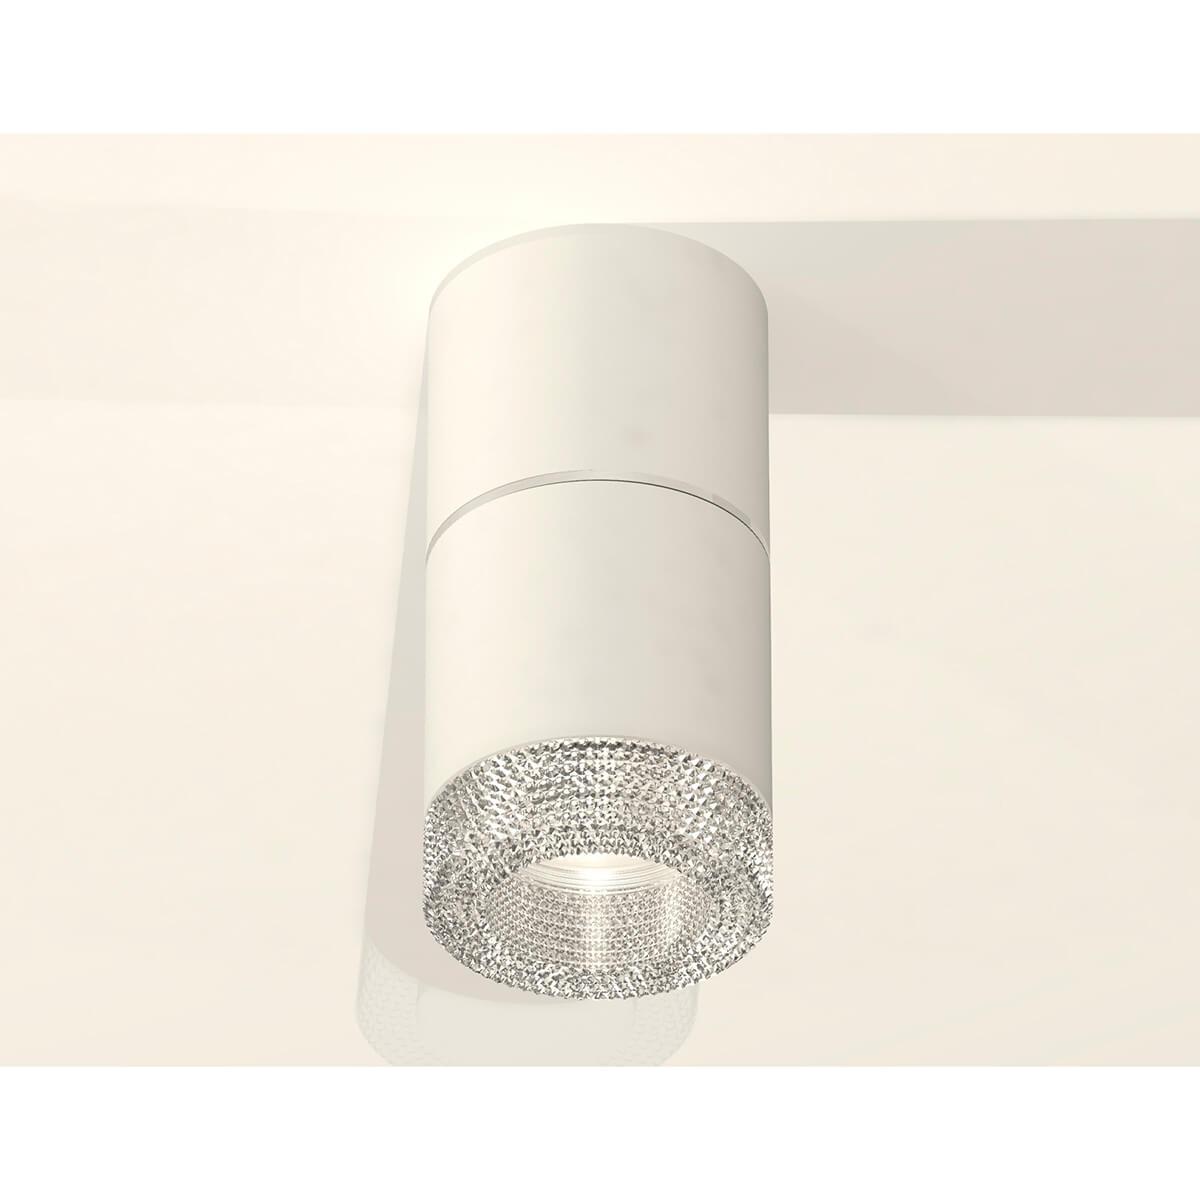 Комплект встраиваемого светильника Ambrella light XS7401162 SWH/CL белый песок/прозрачный MR16 GU5.3 (C7401, A2070, C7401, N7191)